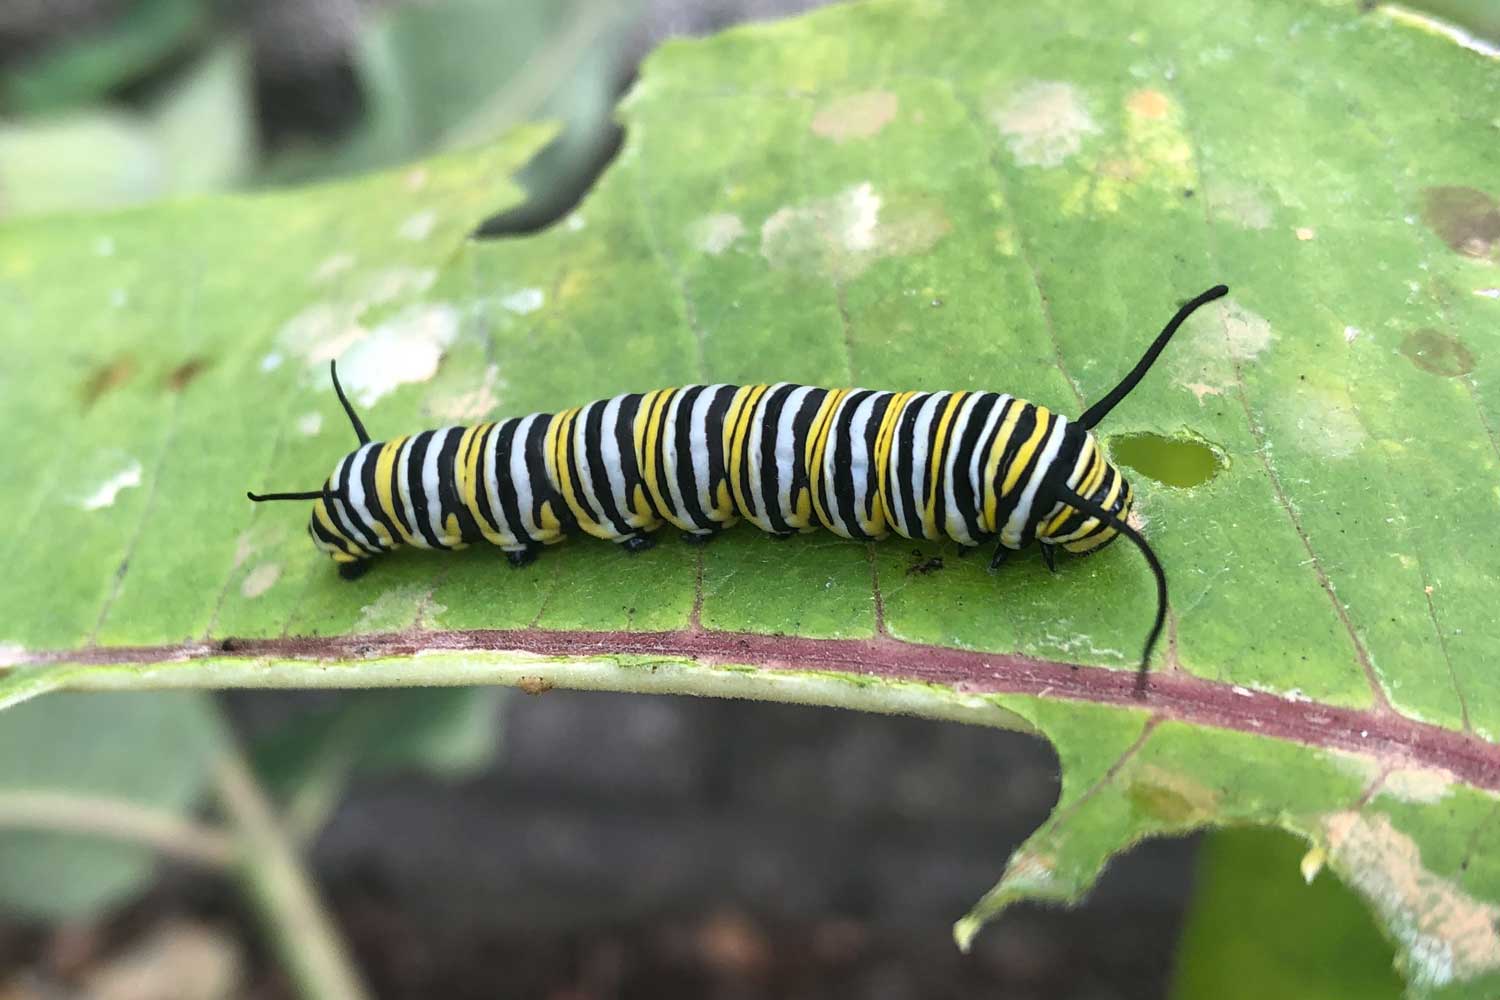 Monarch caterpillar on a leaf.